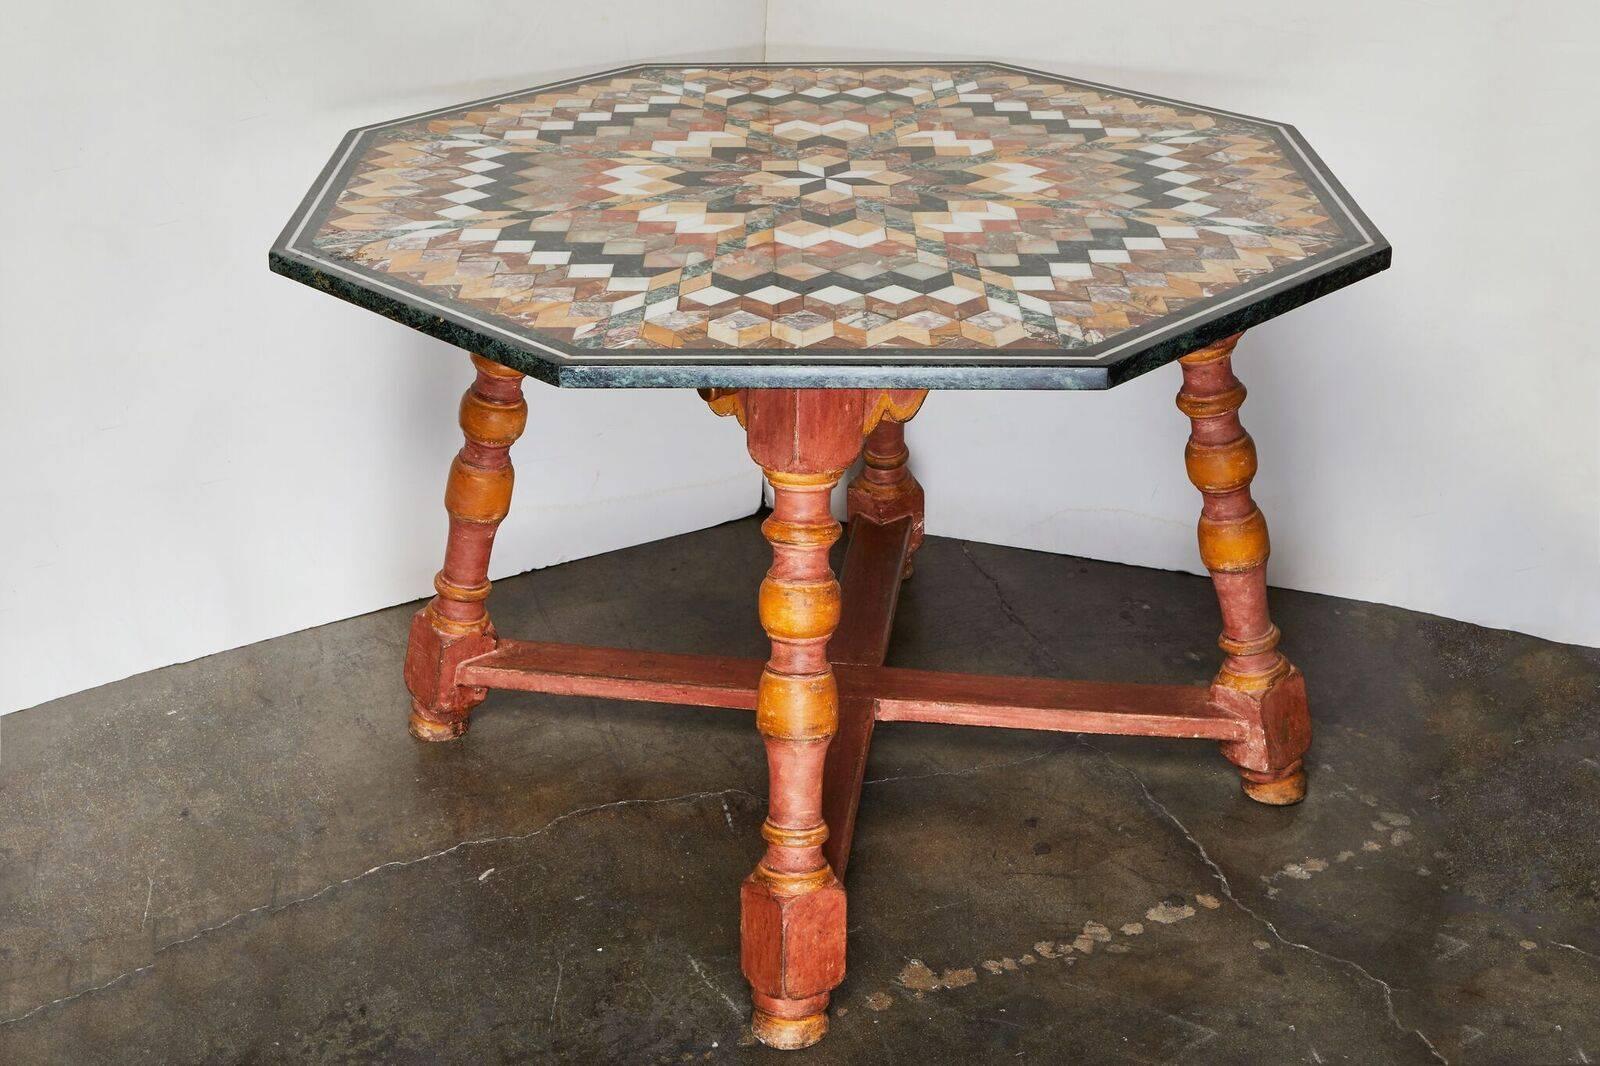 Table surdimensionnée, spectaculaire, octogonale, toscane, datant des années 1930, en marbre spécimen, sur une base peinte, à pieds tournés avec un étrier en X.